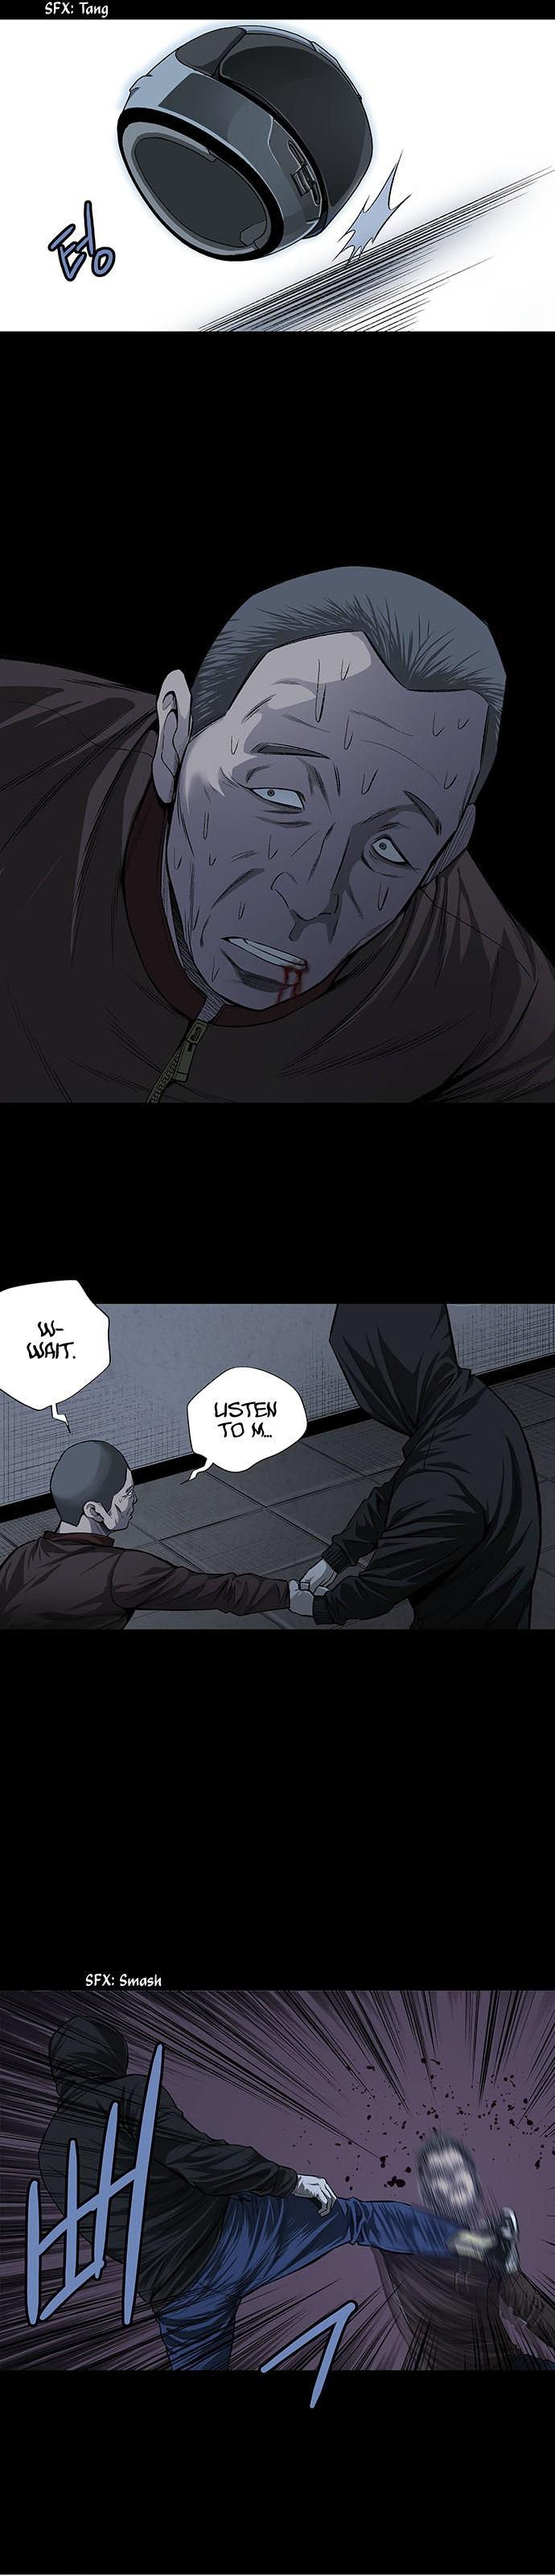 Vigilante - Chapter 8 Page 31